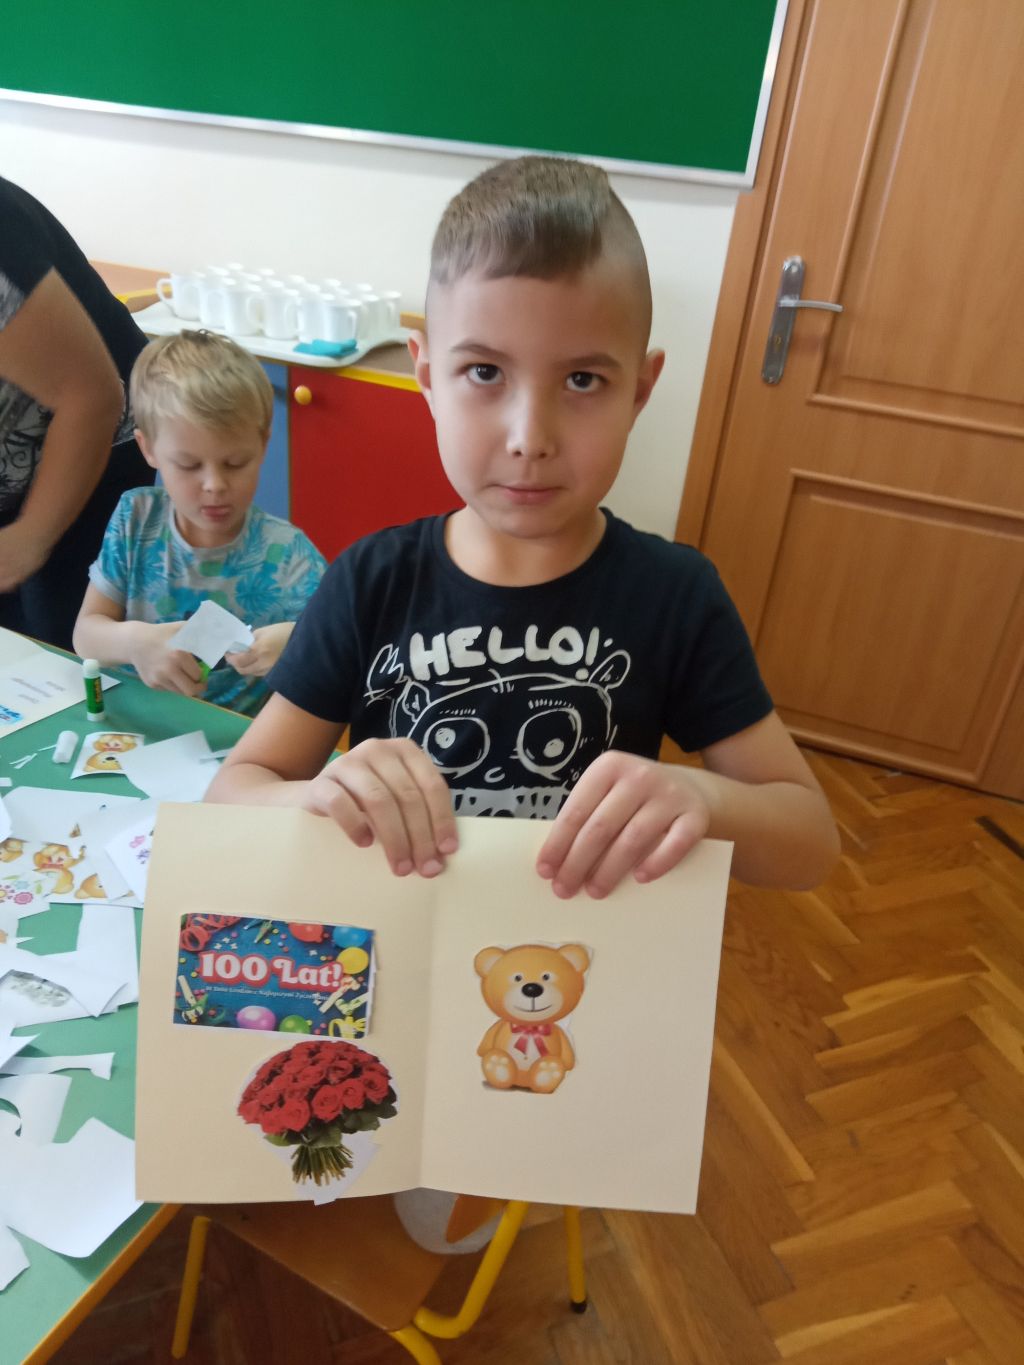 Zdjęcie przedstawia chłopca stojącego obok stolika w przedszkolu. Chłopiec trzyma w rękach wykonana przez siebie laurkę. W tle widać kolejnego chłopca wycinającego obrazki z kartki papieru.